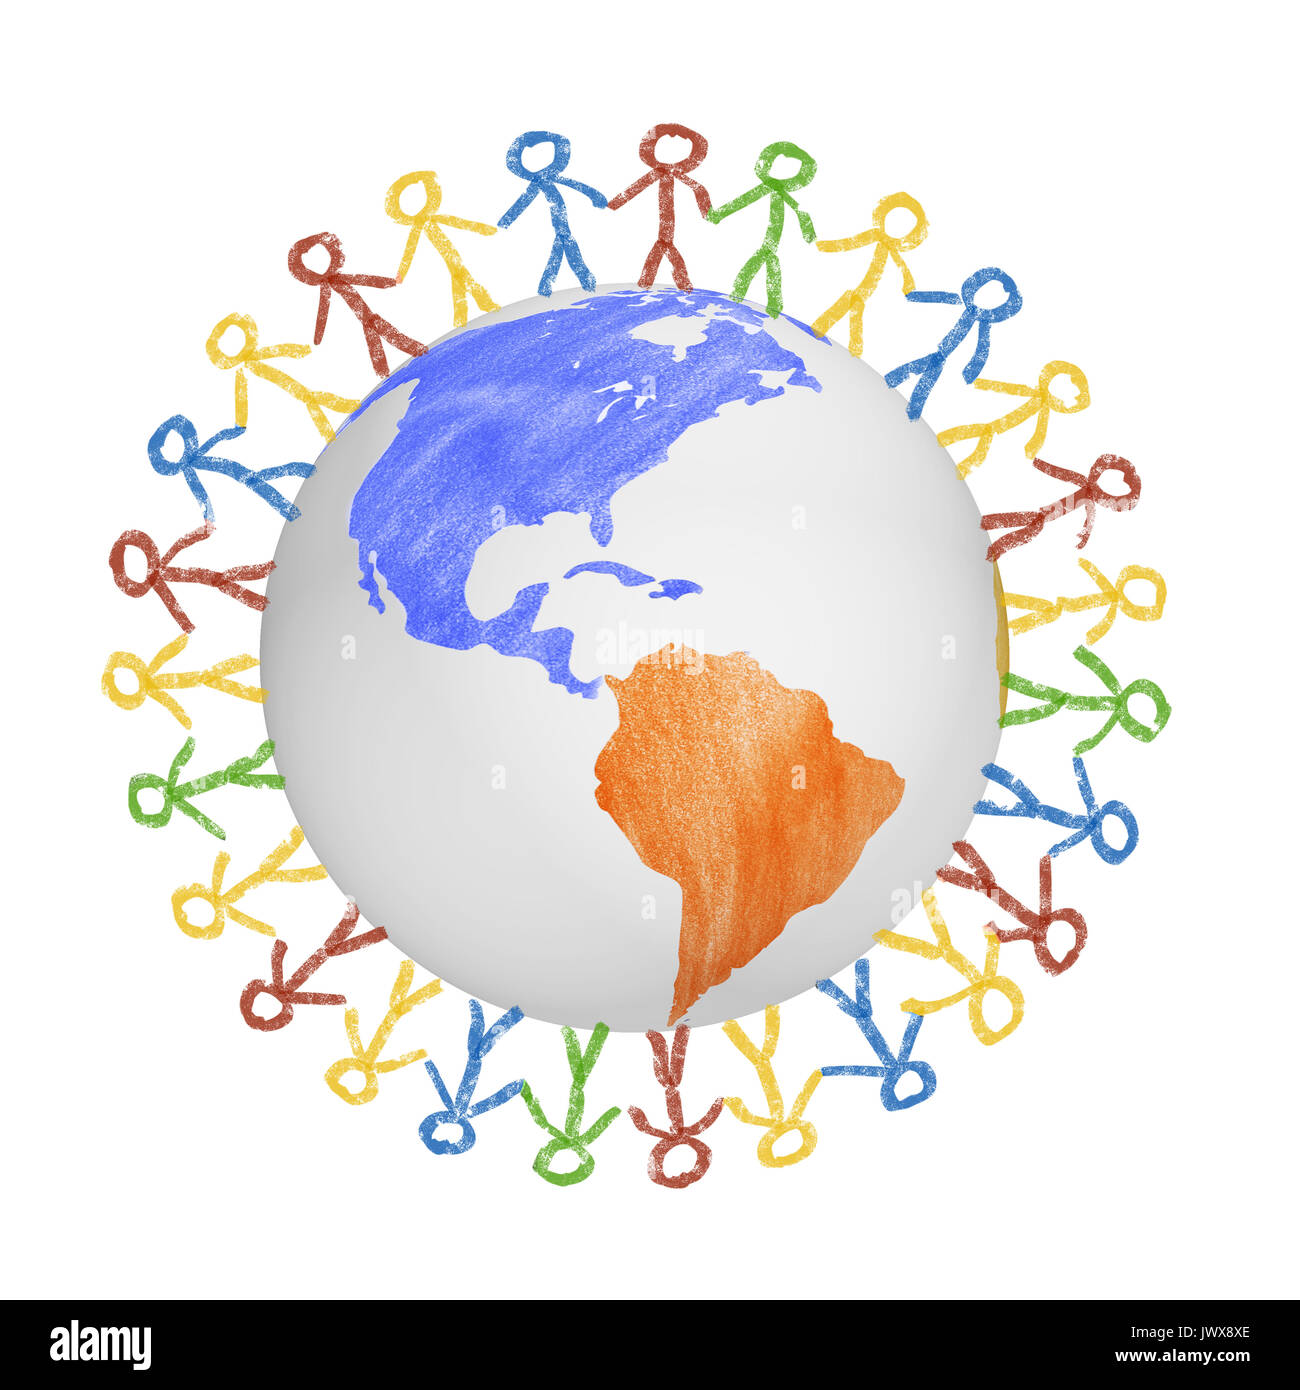 3D-Globus mit dem Blick auf Amerika mit gezogenen Menschen halten sich an den Händen. Konzept für Freundschaft, Globalisierung, Kommunikation und Vielfalt Stockfoto